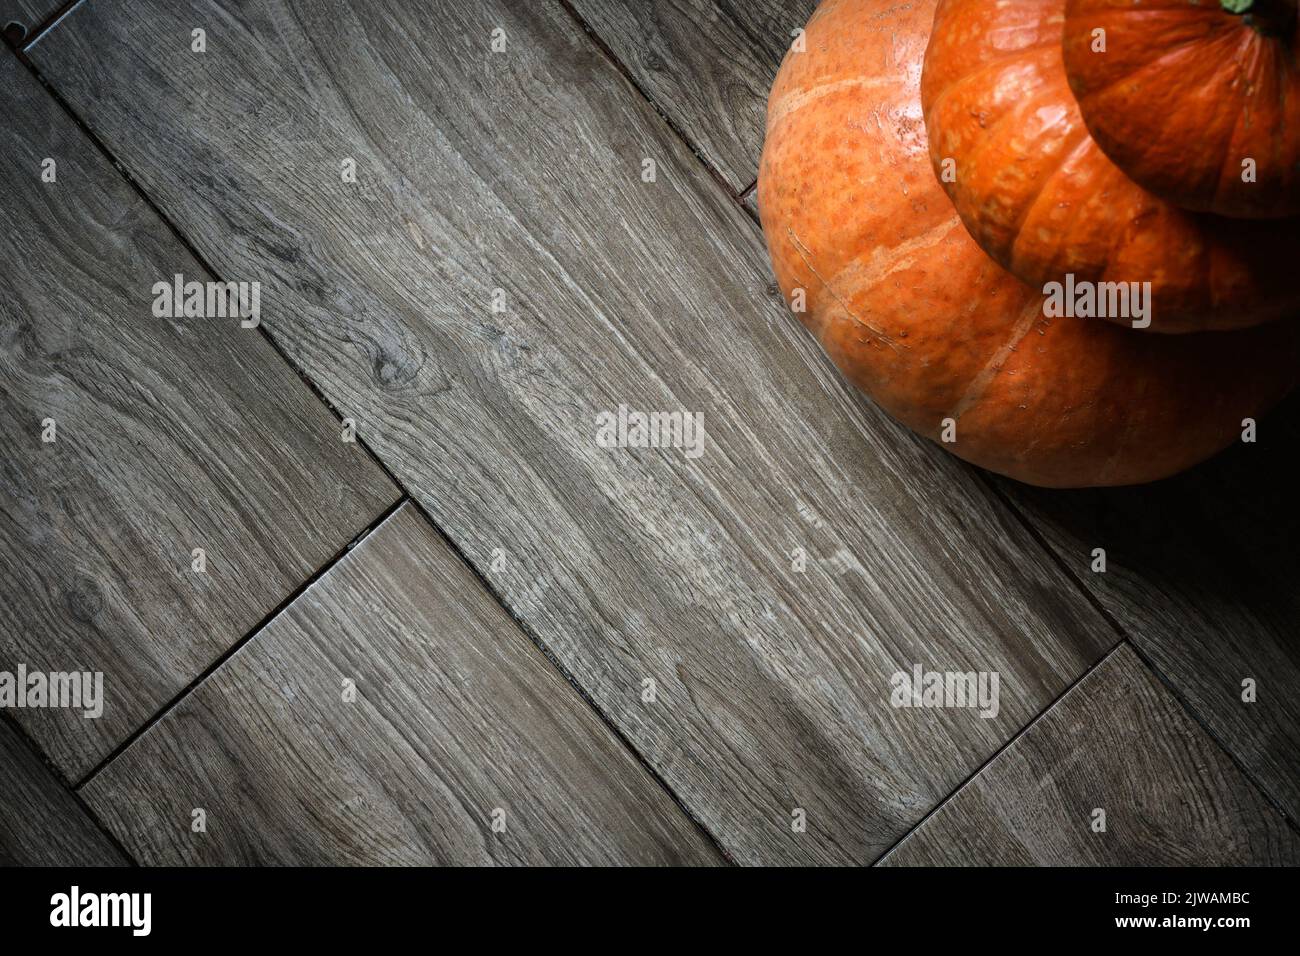 Pila de calabazas sobre tablones de madera de fondo para el tema de Halloween. Vista superior de la torre de verduras de color naranja en el suelo de madera y espacio. Halloween, gracias Foto de stock